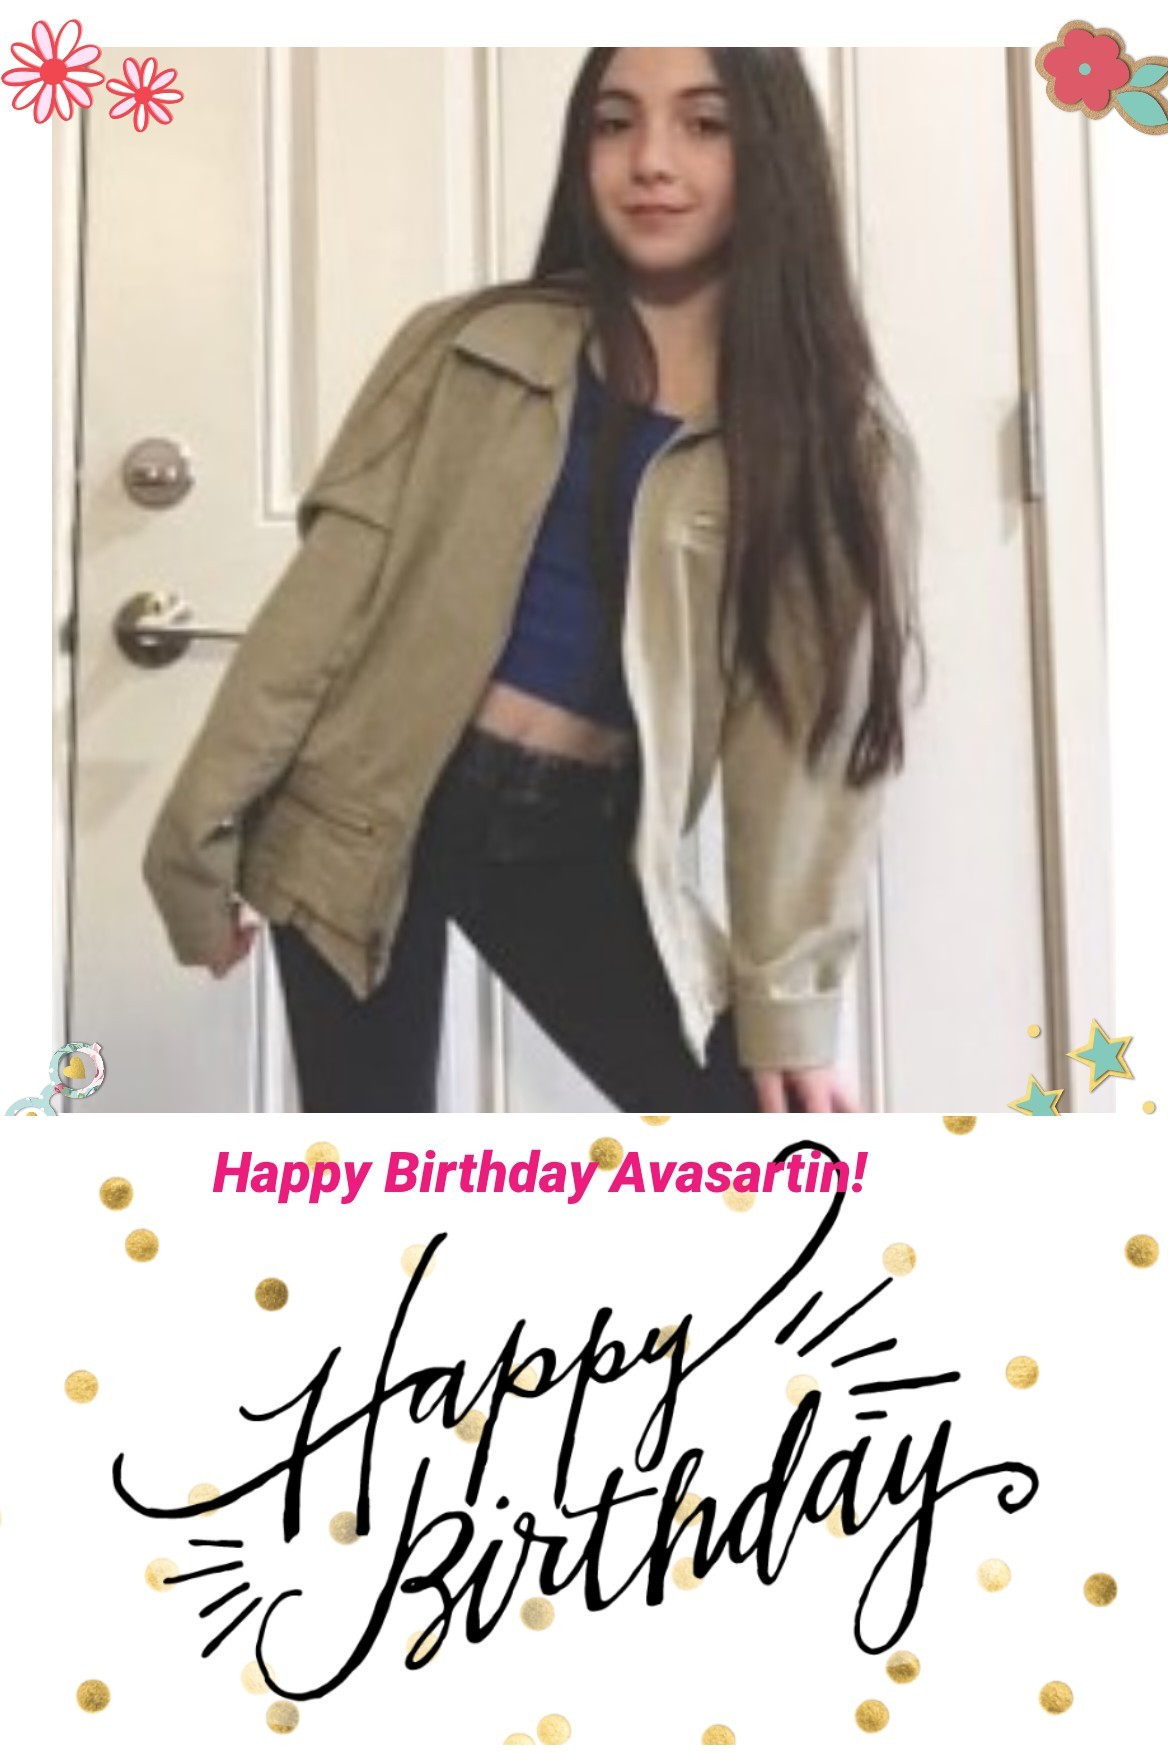 Happy Birthday Avasartin!